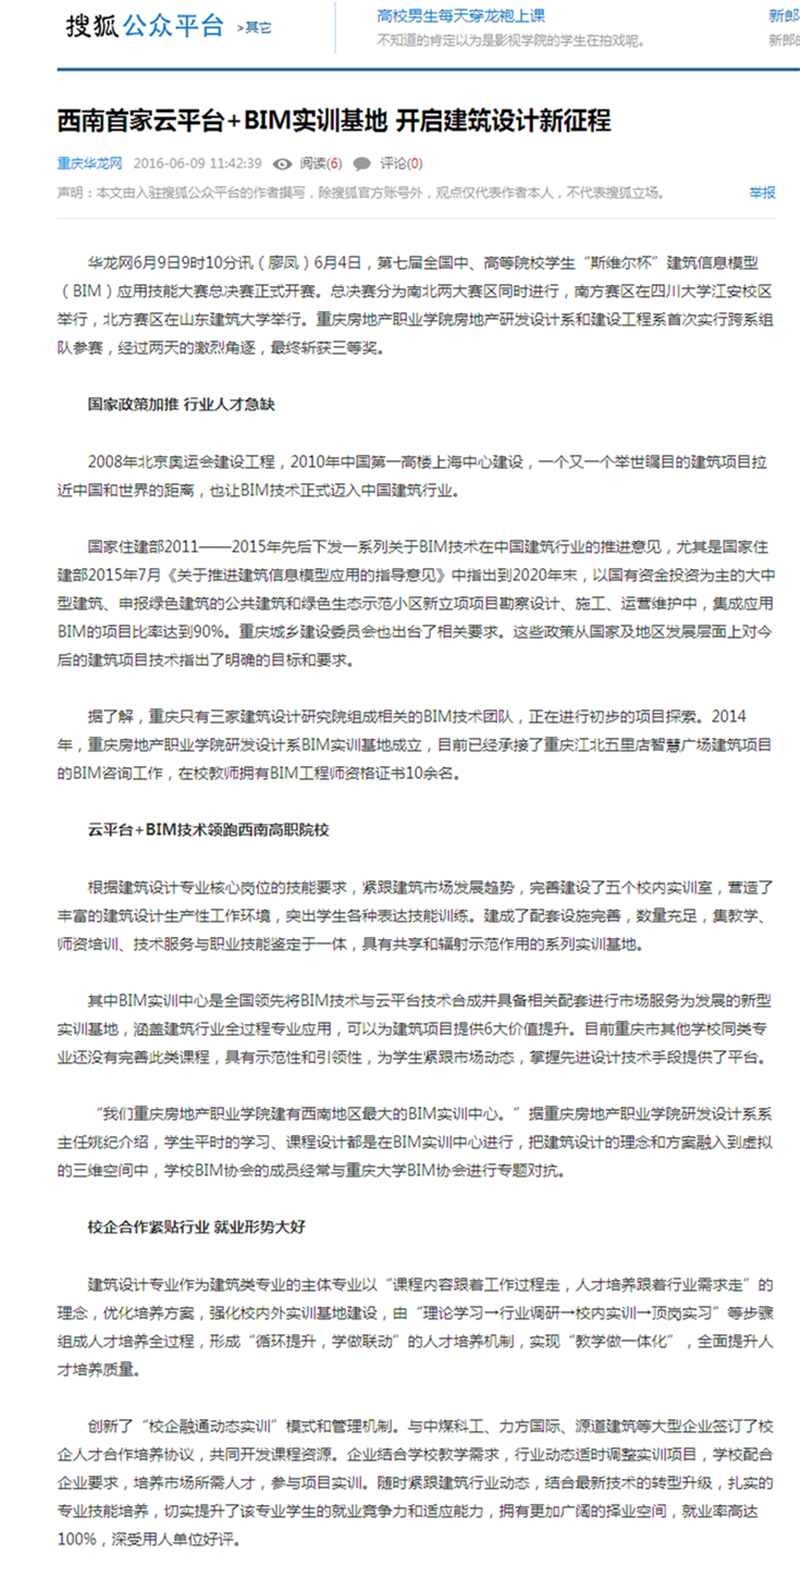 西南首家云平台+BIM实训基地 开启建筑设计新征程-搜狐_副本.png